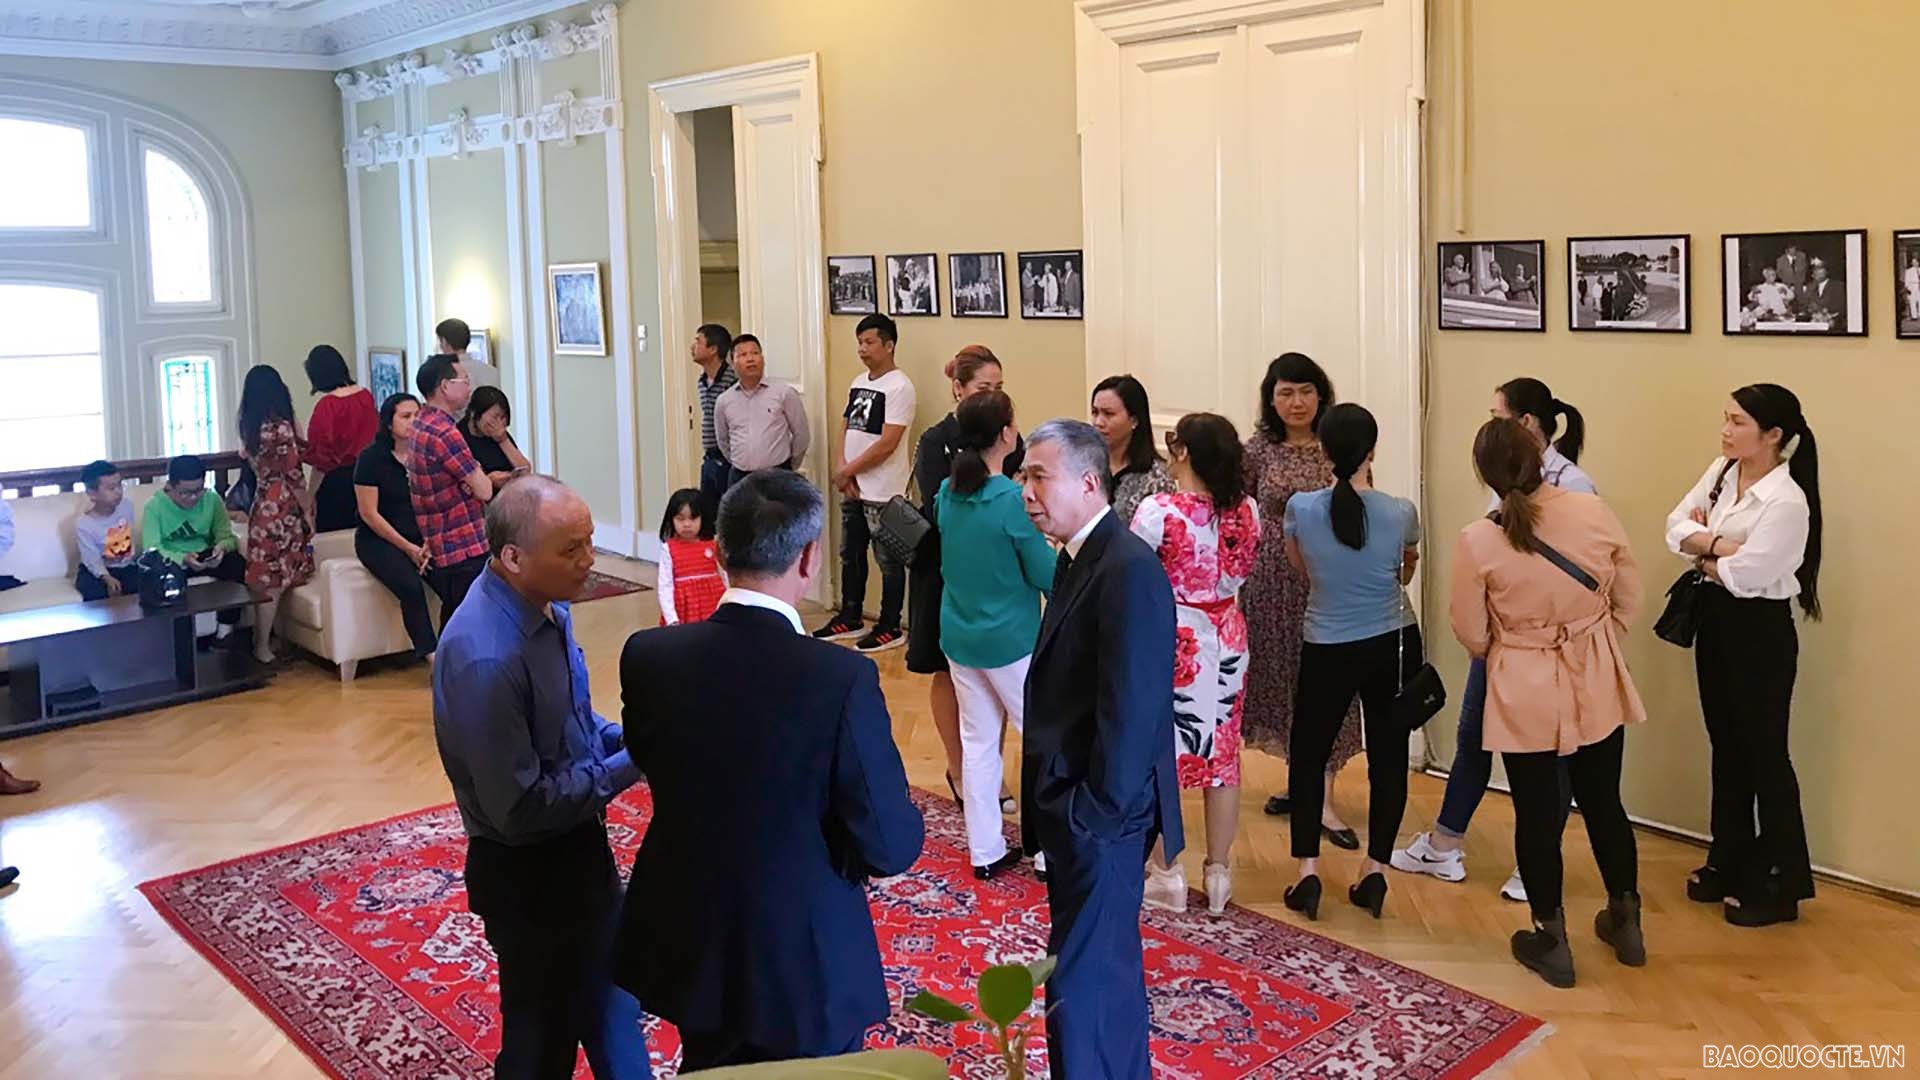 Các đại biểu cũng đã tham dự, xem trưng bày ảnh về Chủ tịch Hồ Chí Minh.